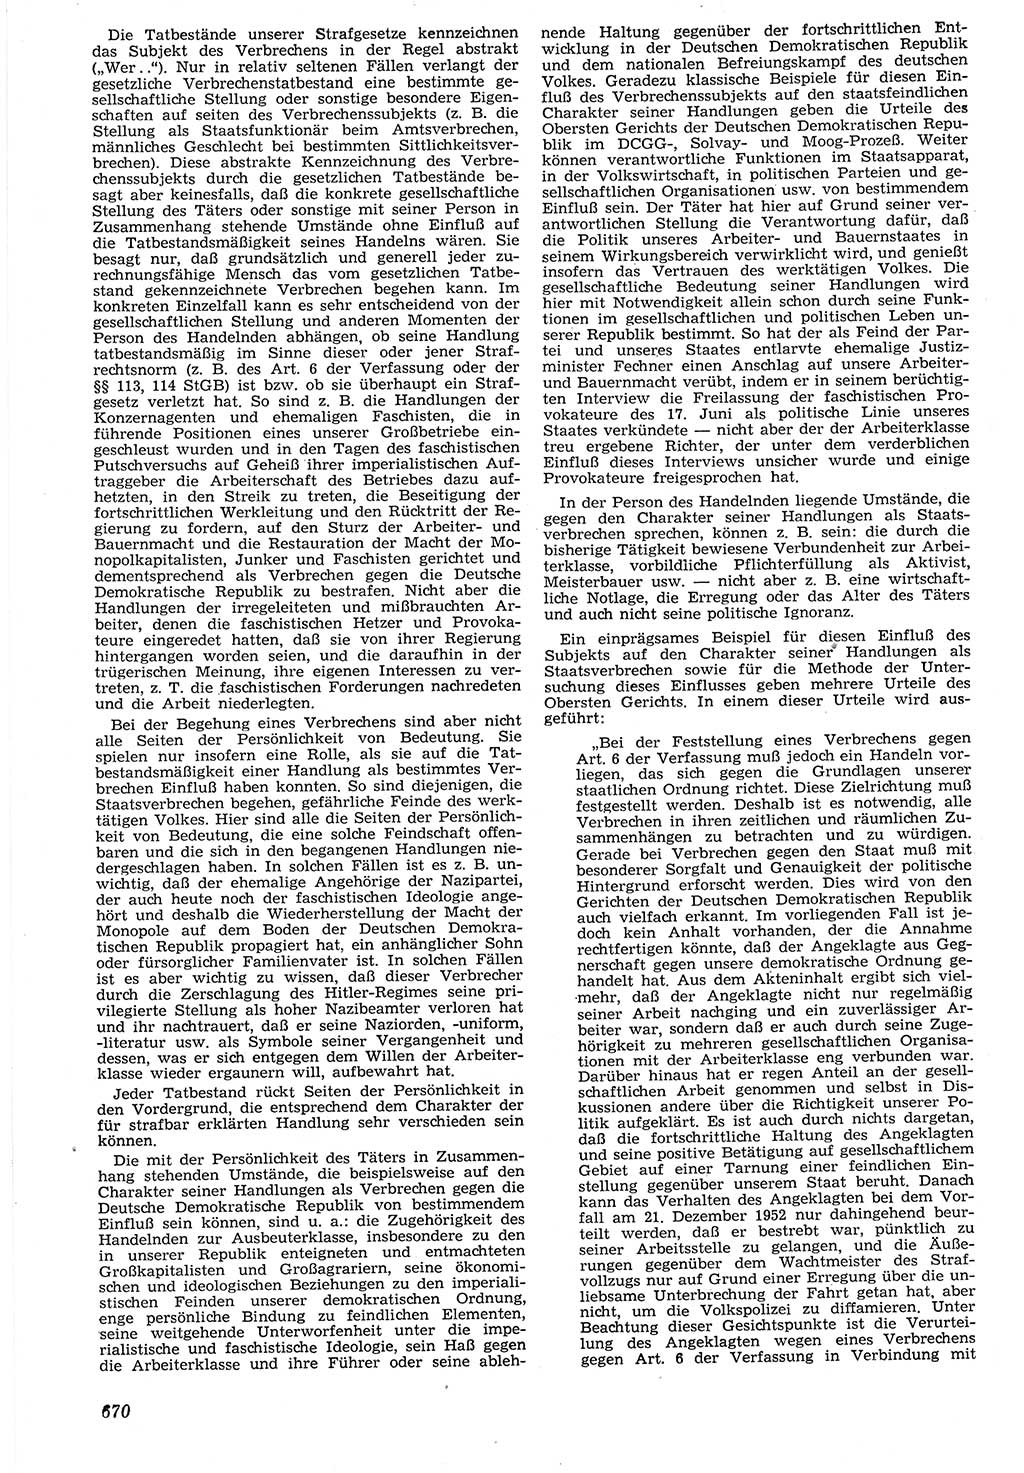 Neue Justiz (NJ), Zeitschrift für Recht und Rechtswissenschaft [Deutsche Demokratische Republik (DDR)], 7. Jahrgang 1953, Seite 670 (NJ DDR 1953, S. 670)